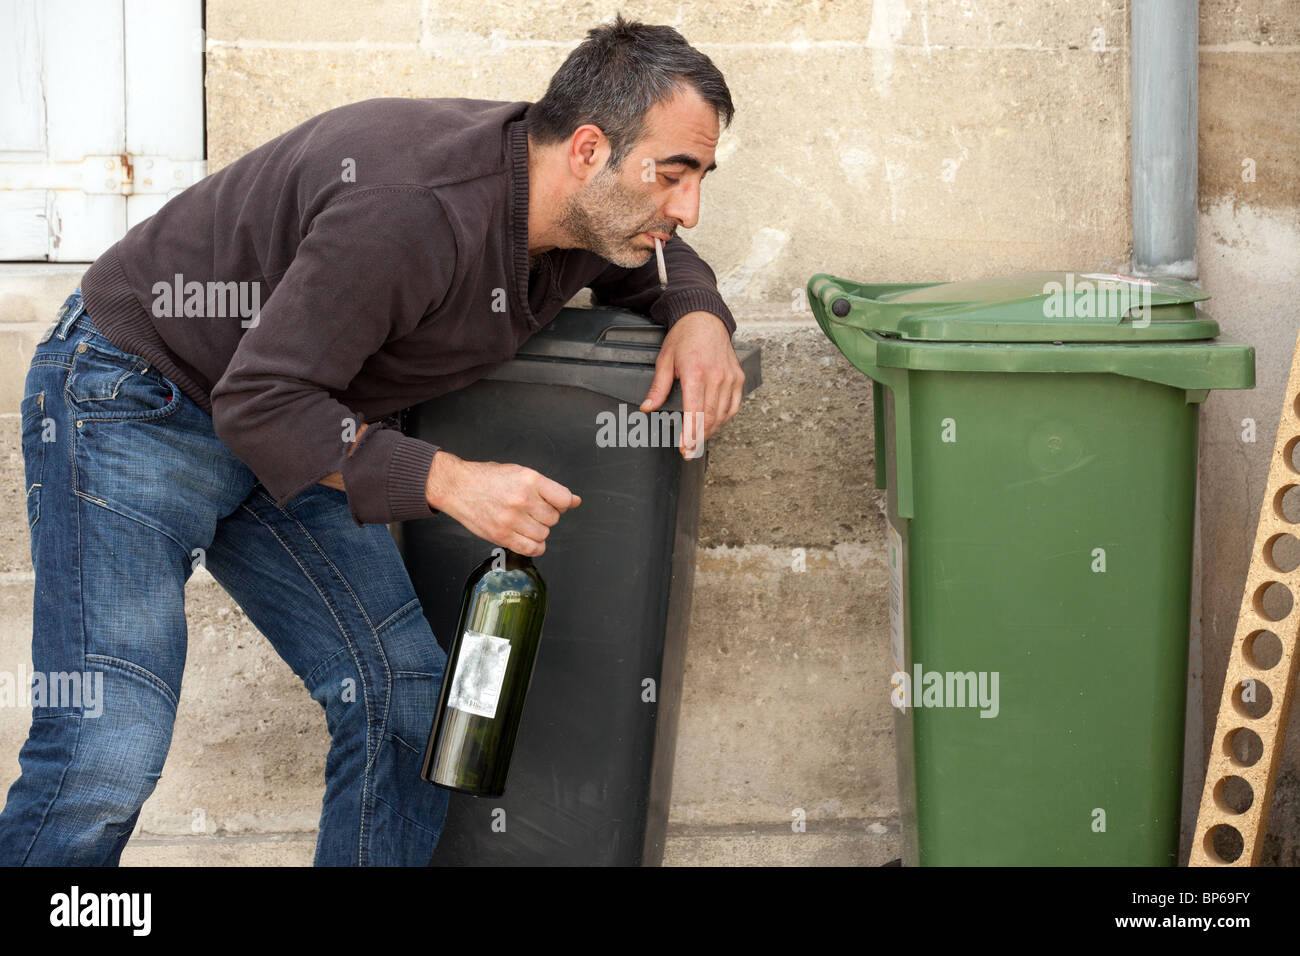 Pauvre homme ivre debout près de poubelle dans la rue Ville Banque D'Images